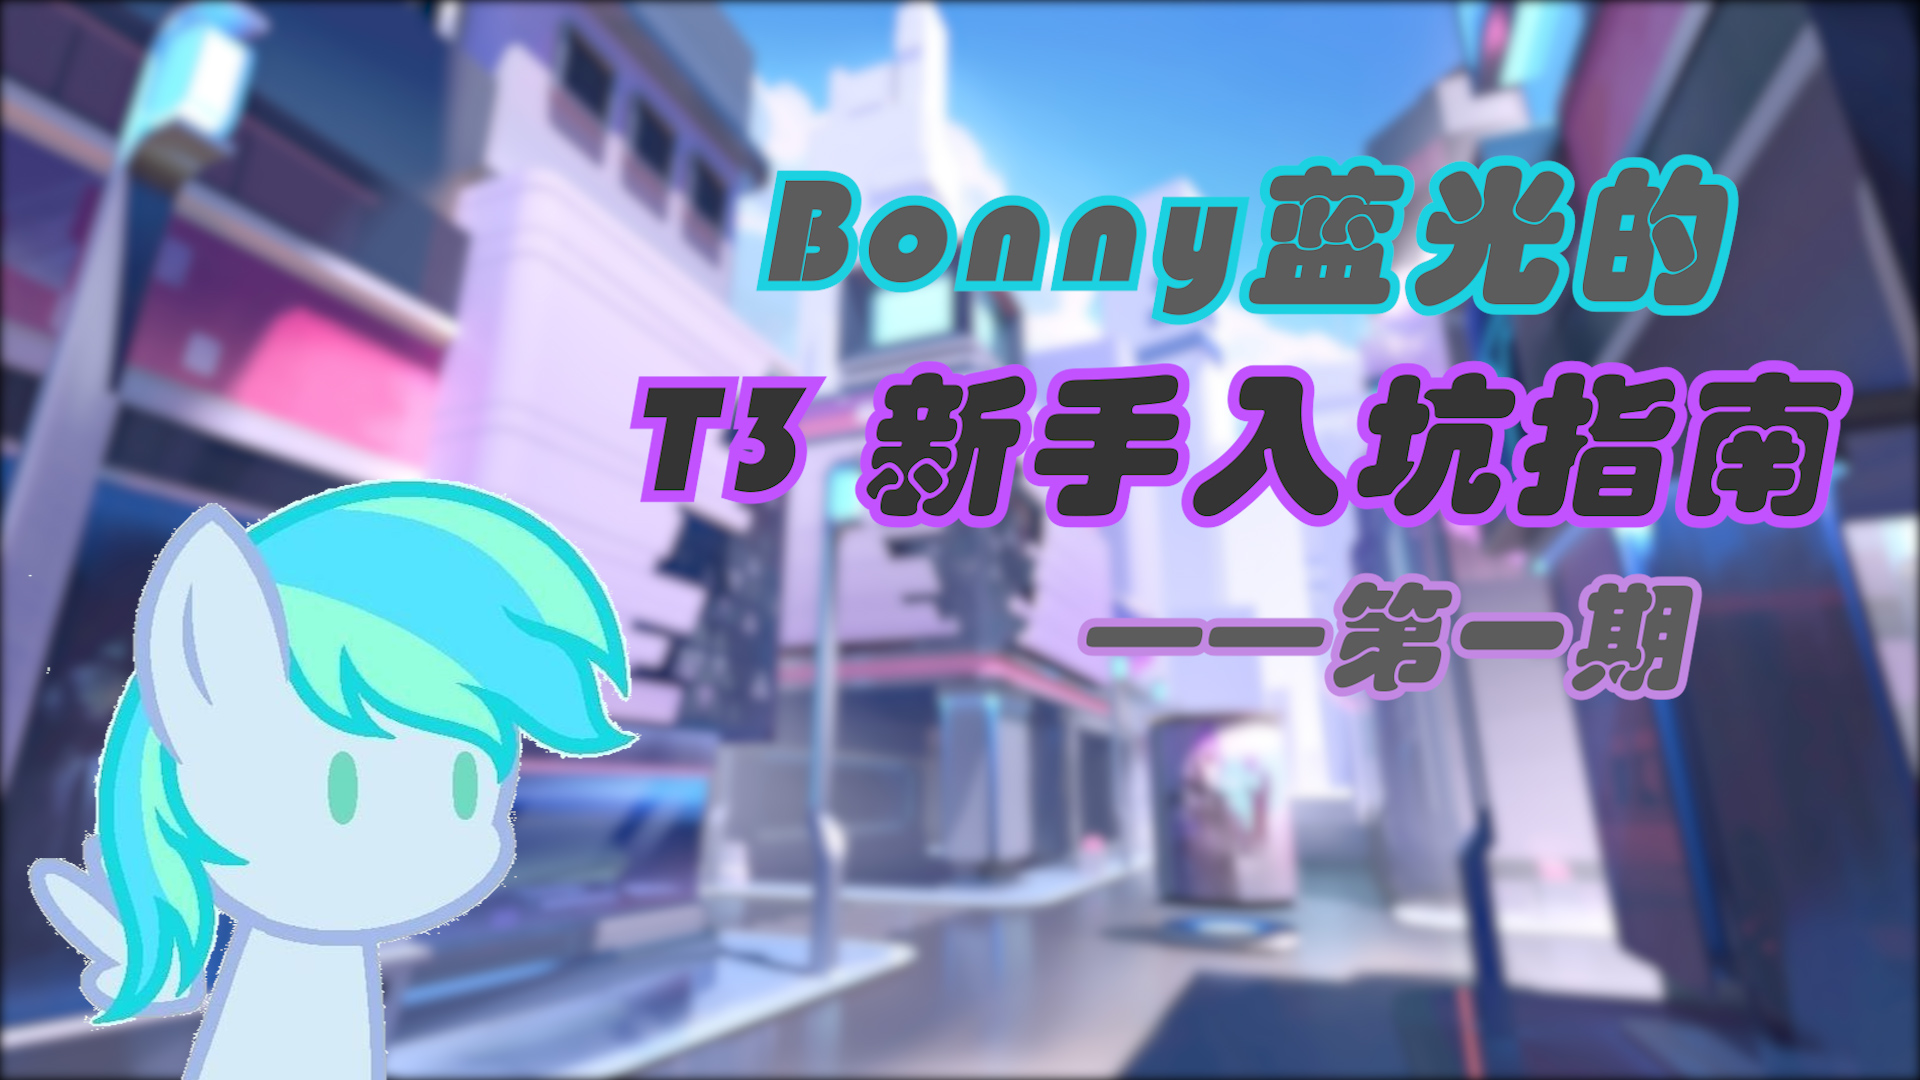 【游戏指南/T3】Bonny蓝光的 T3新手入坑指南 第一期